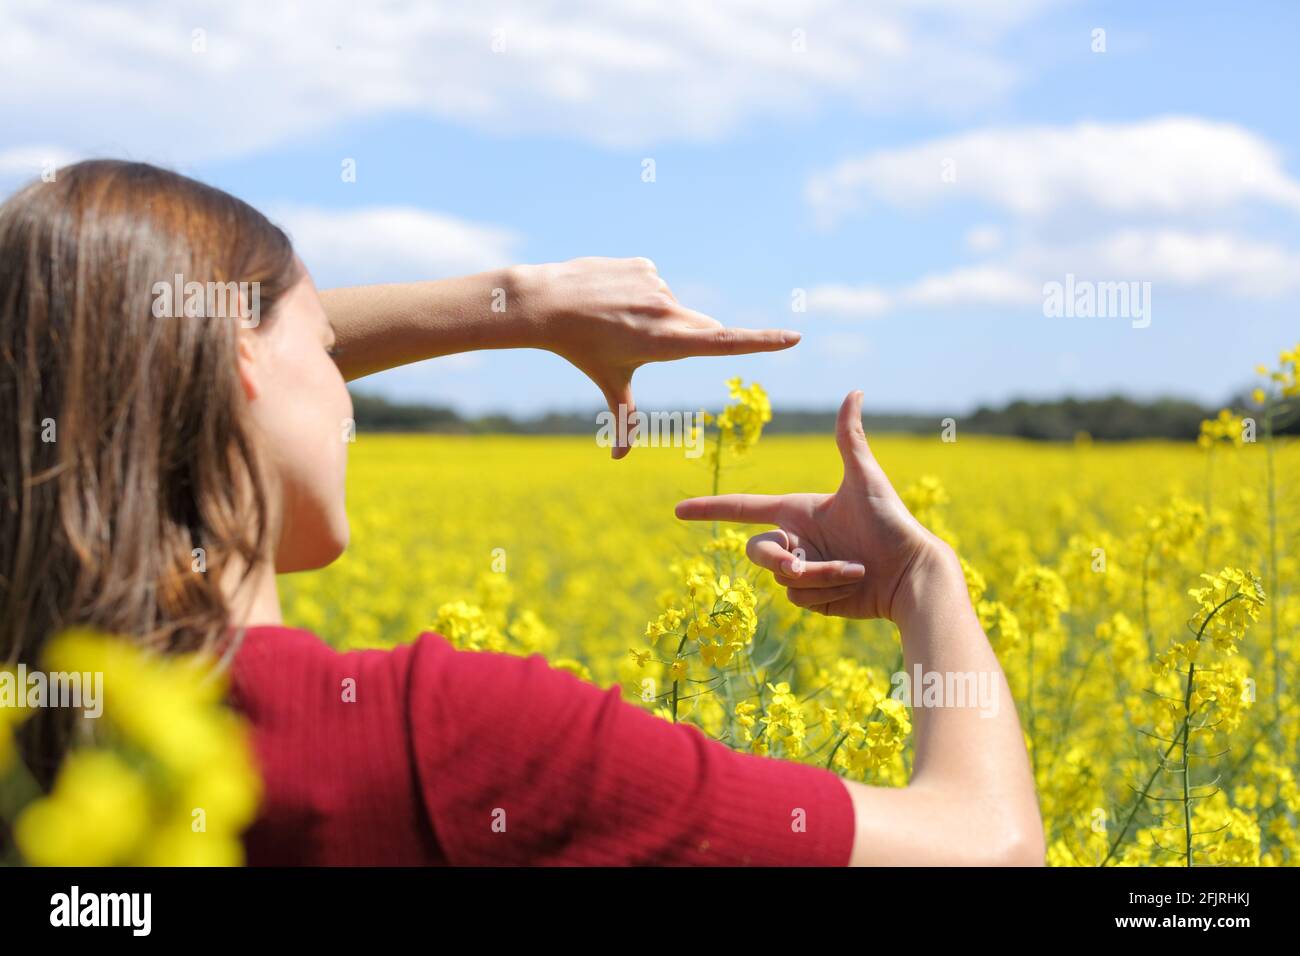 Primo piano di una donna mani che incornicia fiore in un campo giallo in primavera Foto Stock